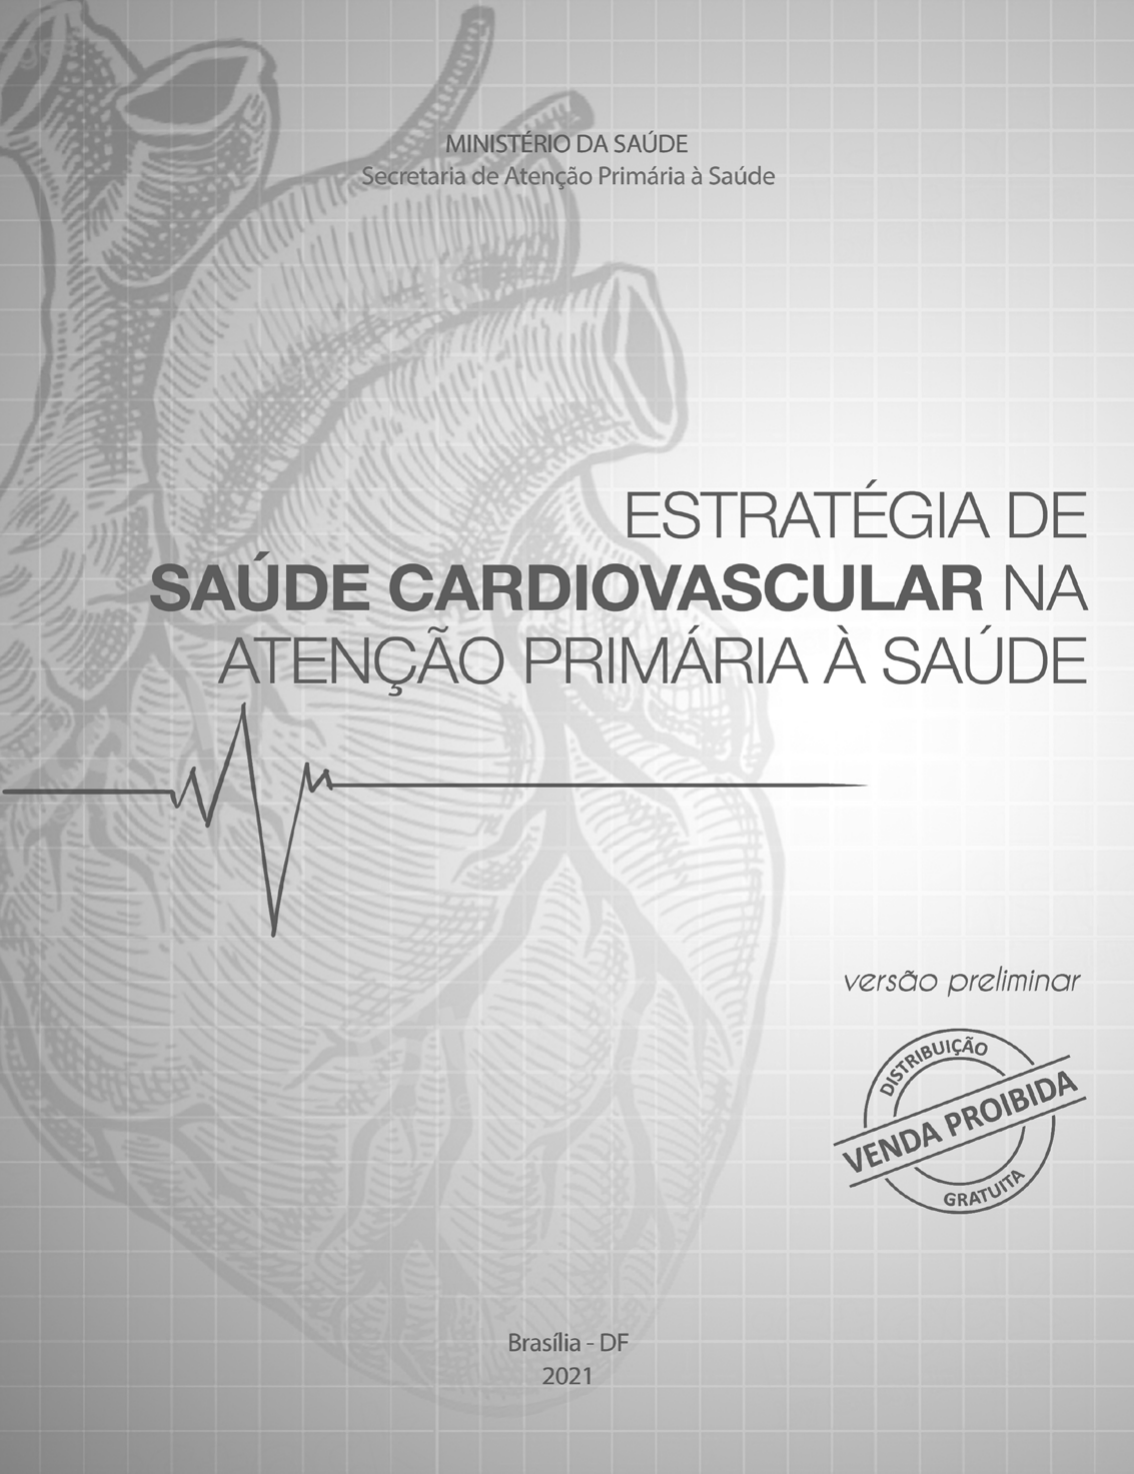 Levantamento de pesos ajuda na prevenção de lesões e melhora cardiovascular  - Saúde - Estado de Minas